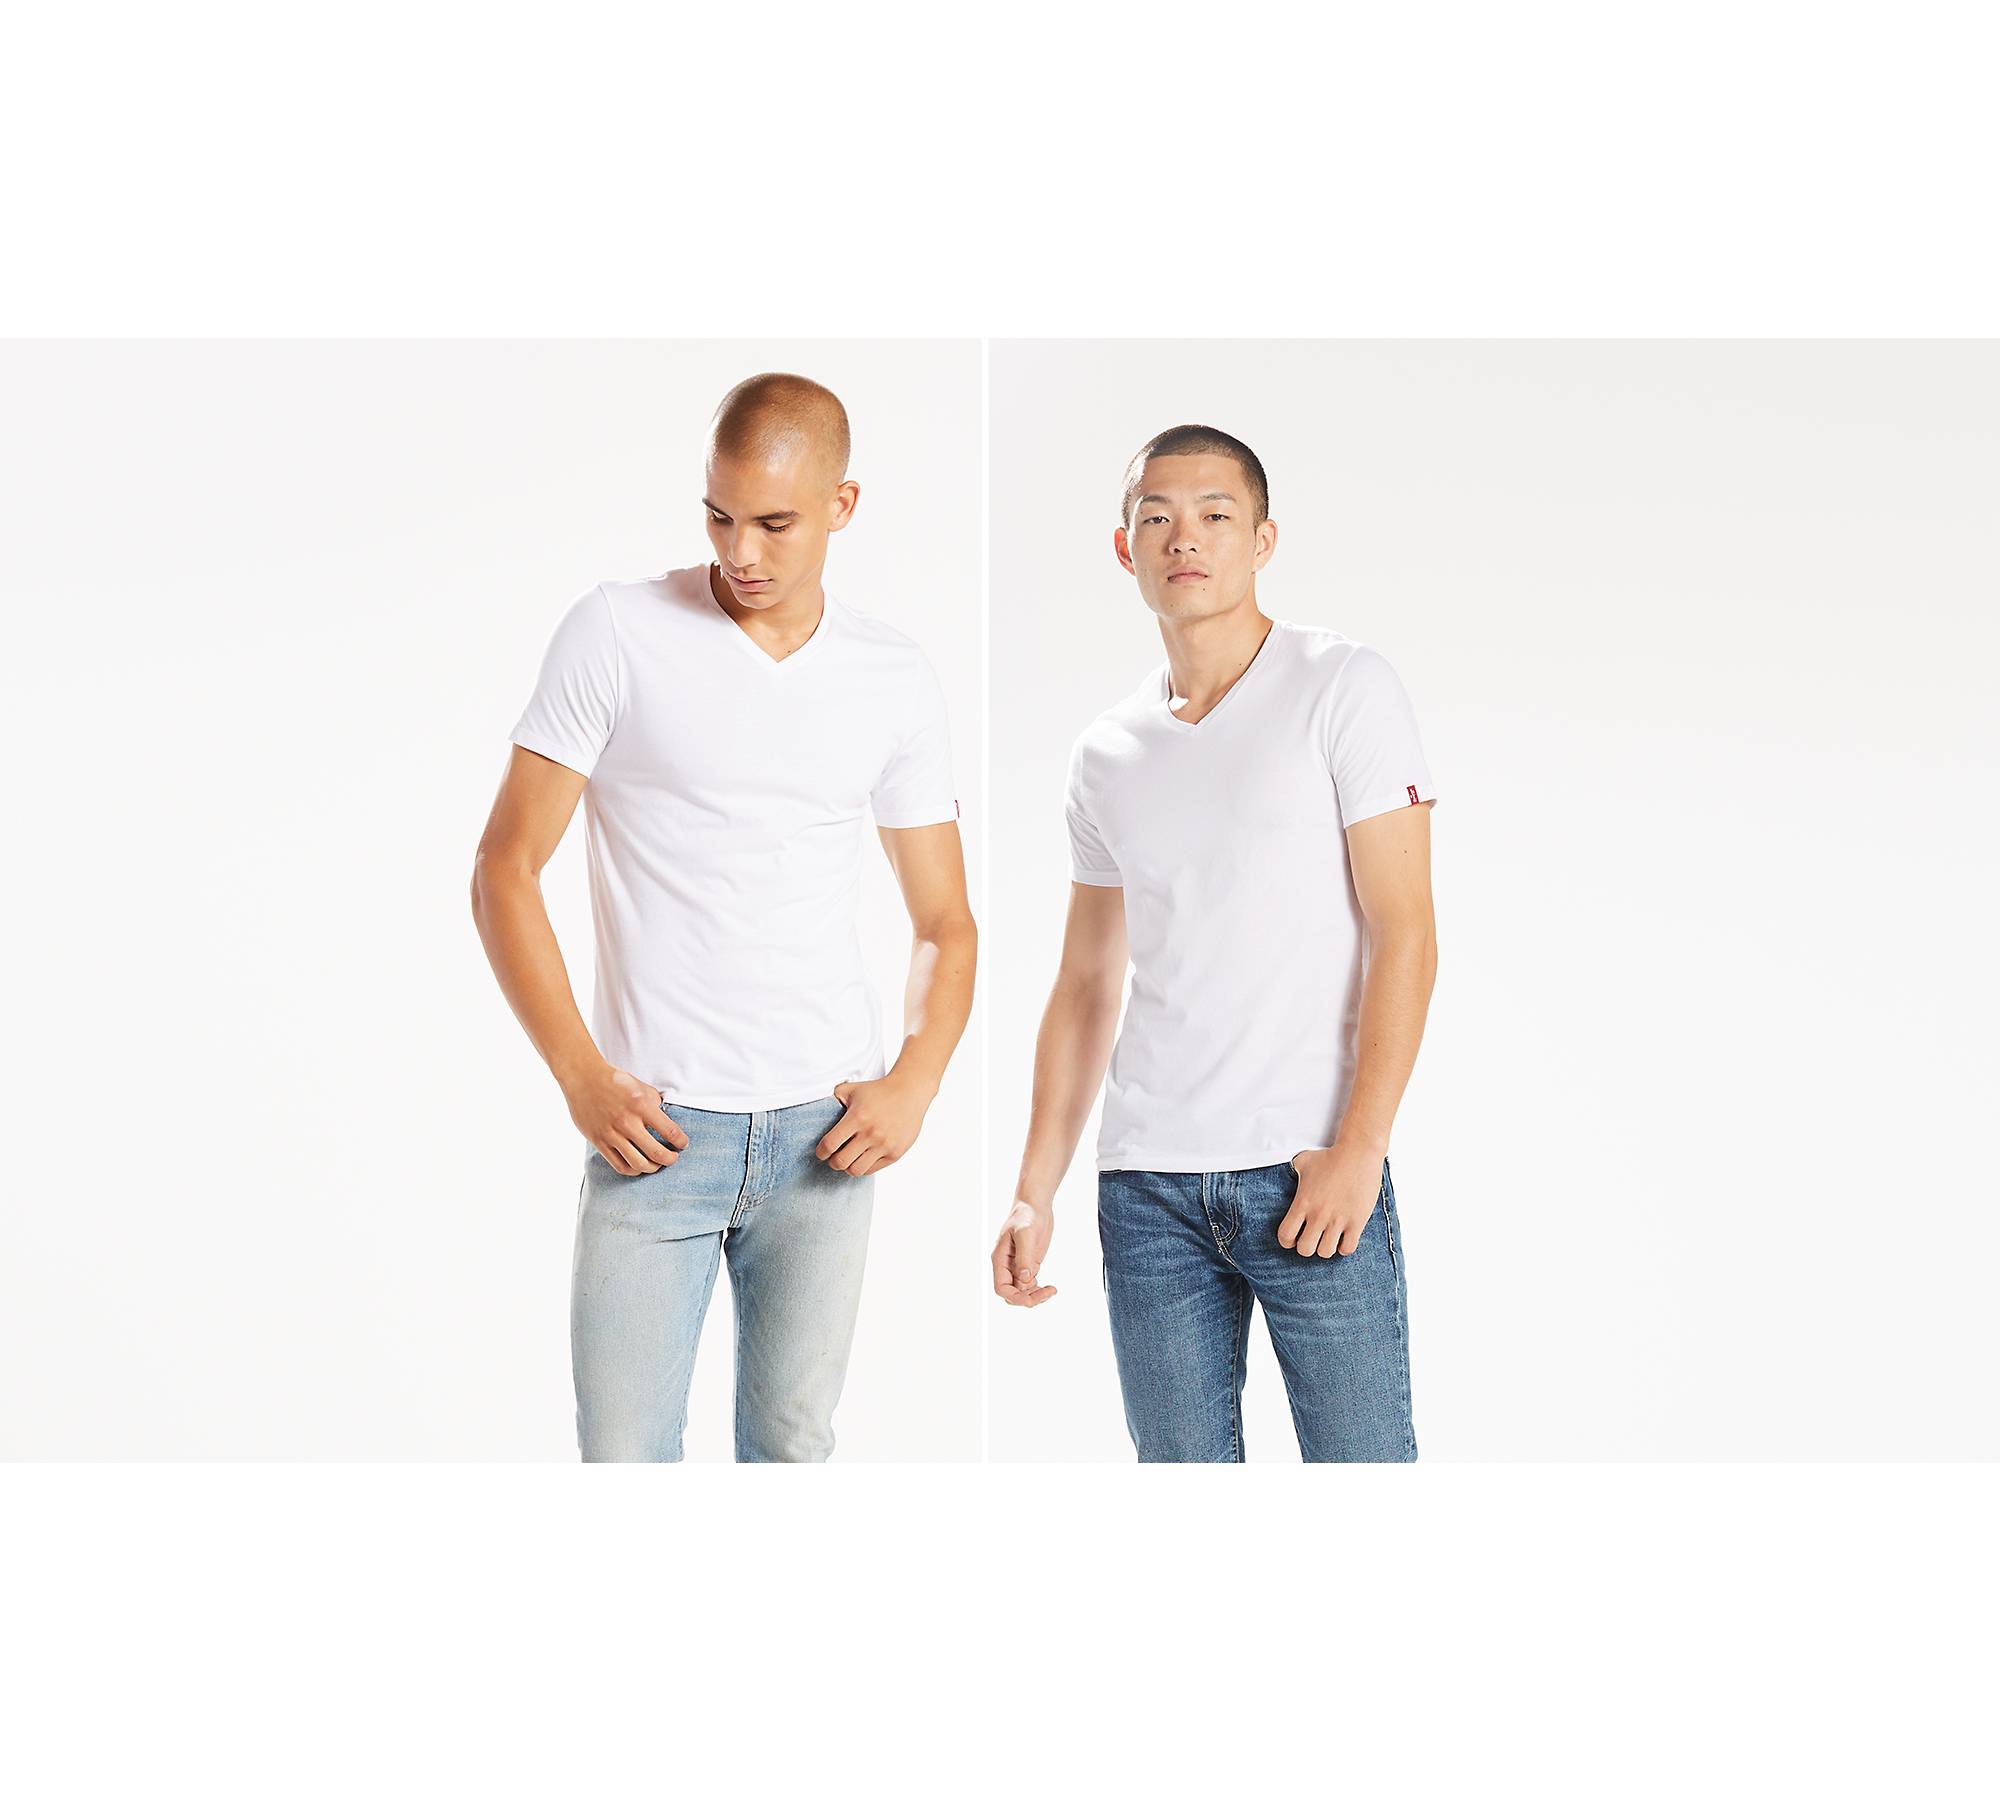 Slim Fit V-neck Tee Shirt (2-pack) - White